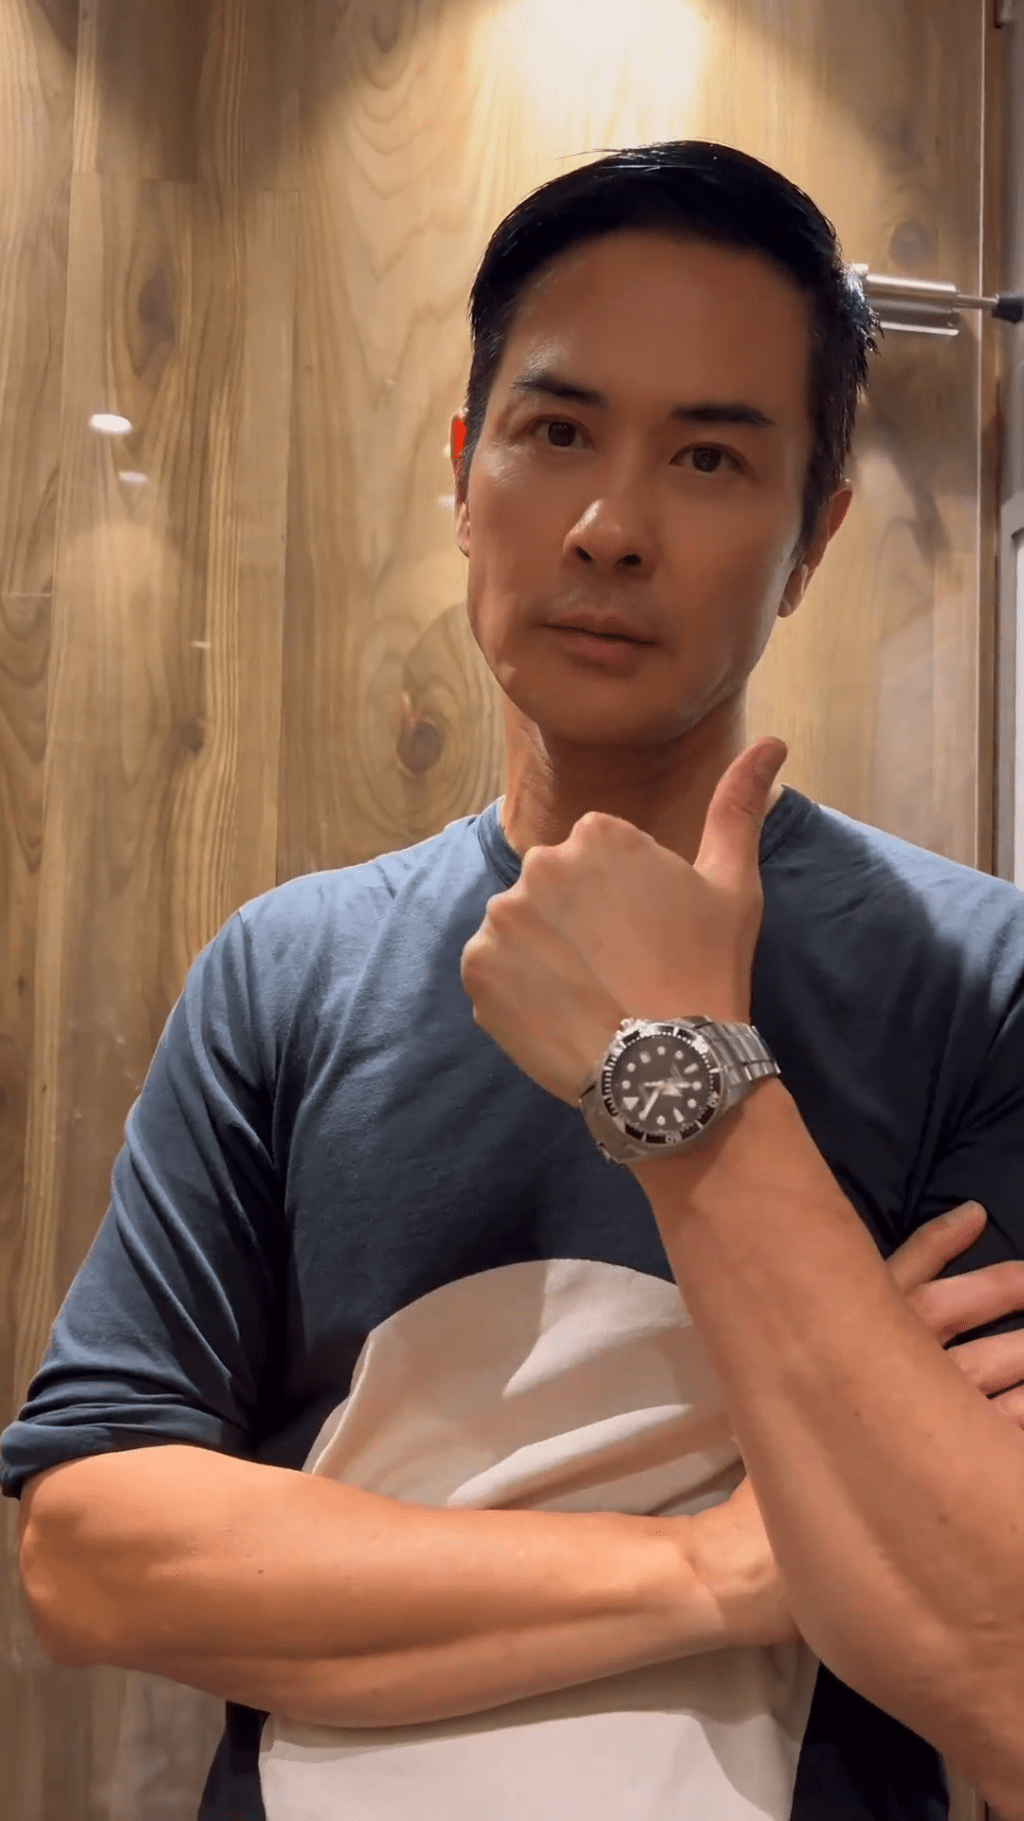 不少網民看到鄭嘉穎手上所戴的錶即大讚低調又貼地。